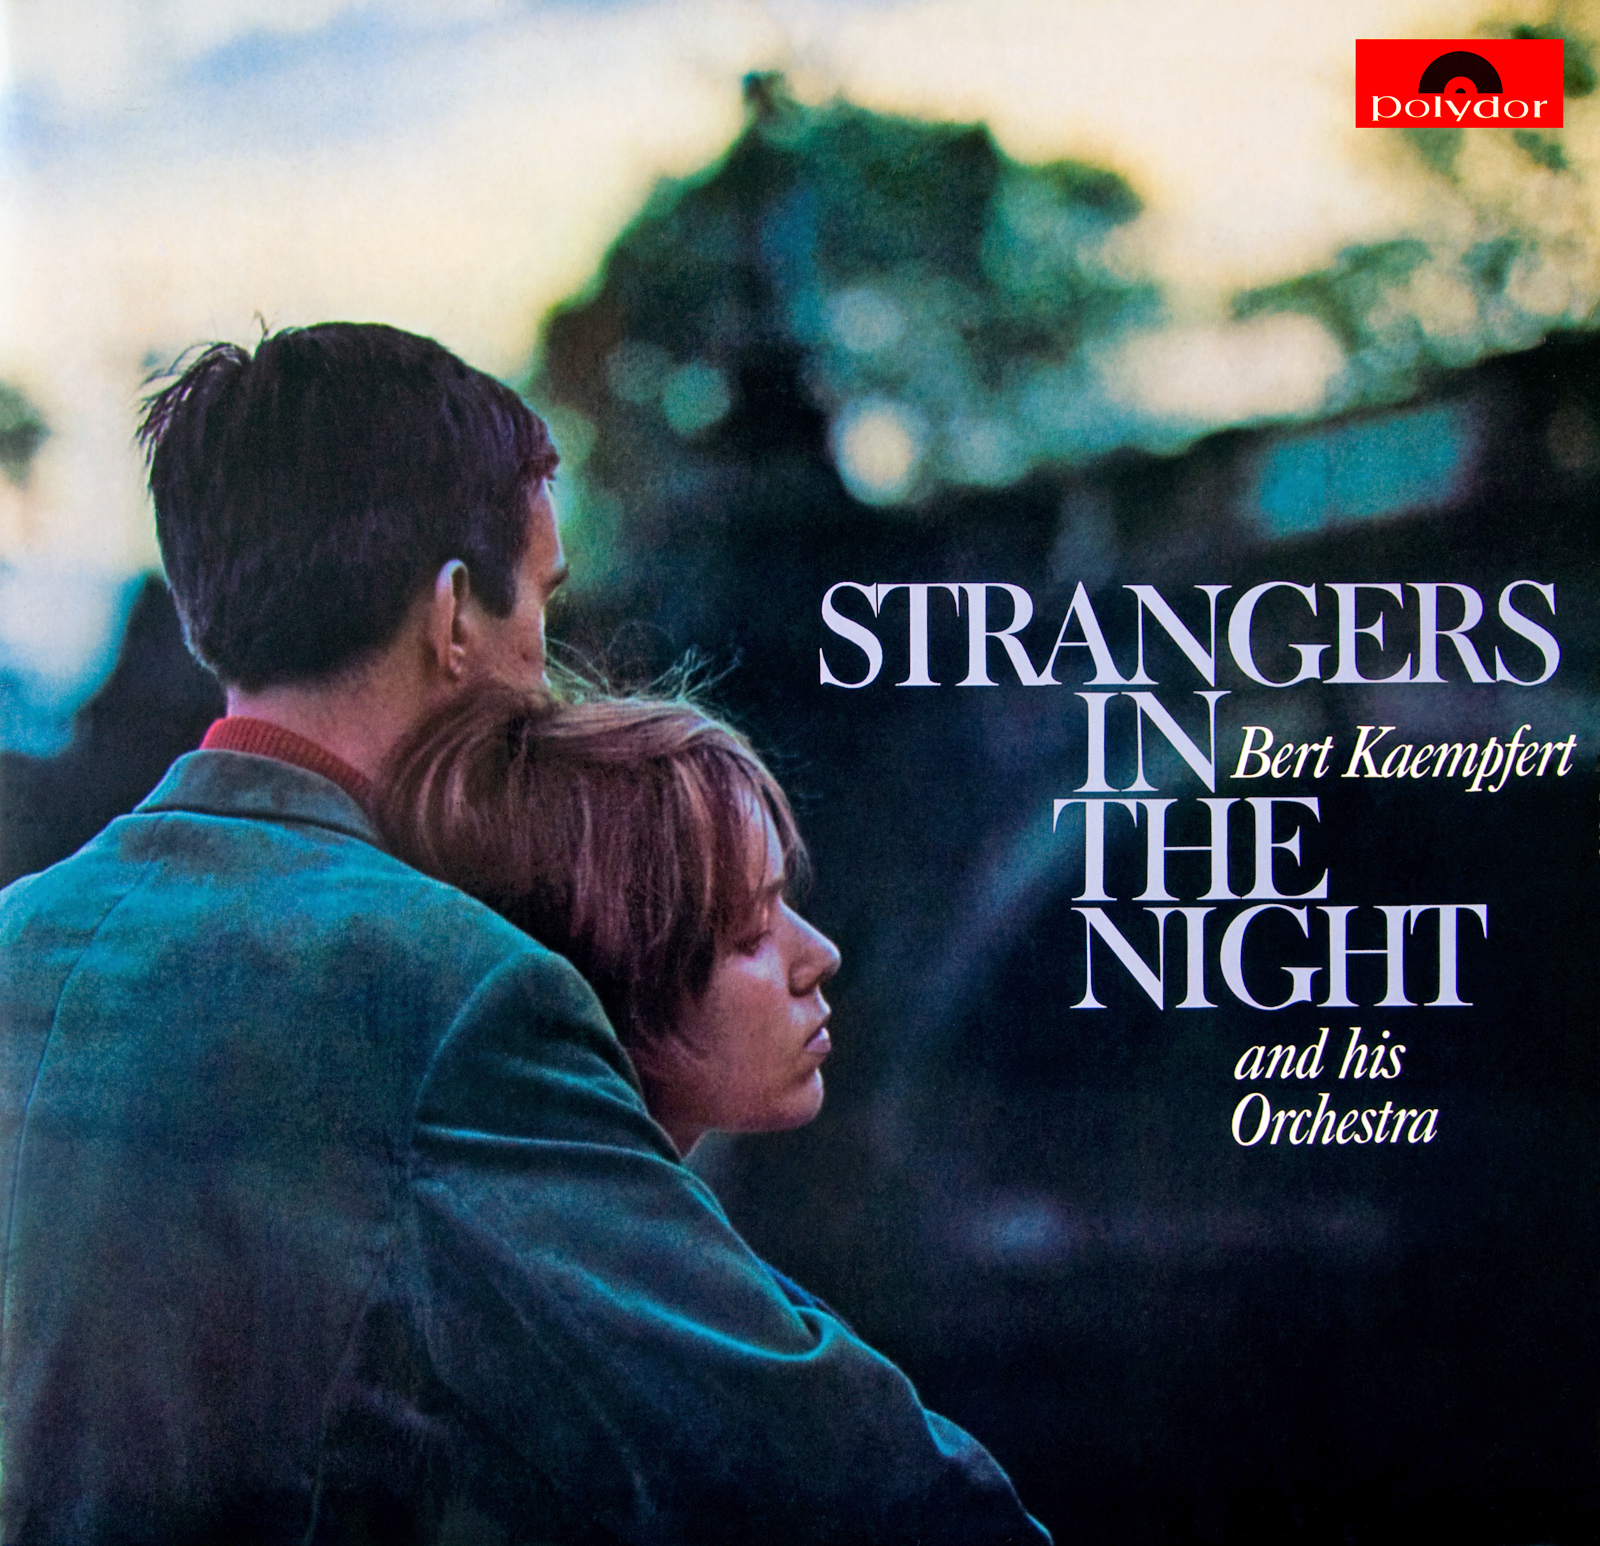 Bert Kaempfert Strangers In The Night